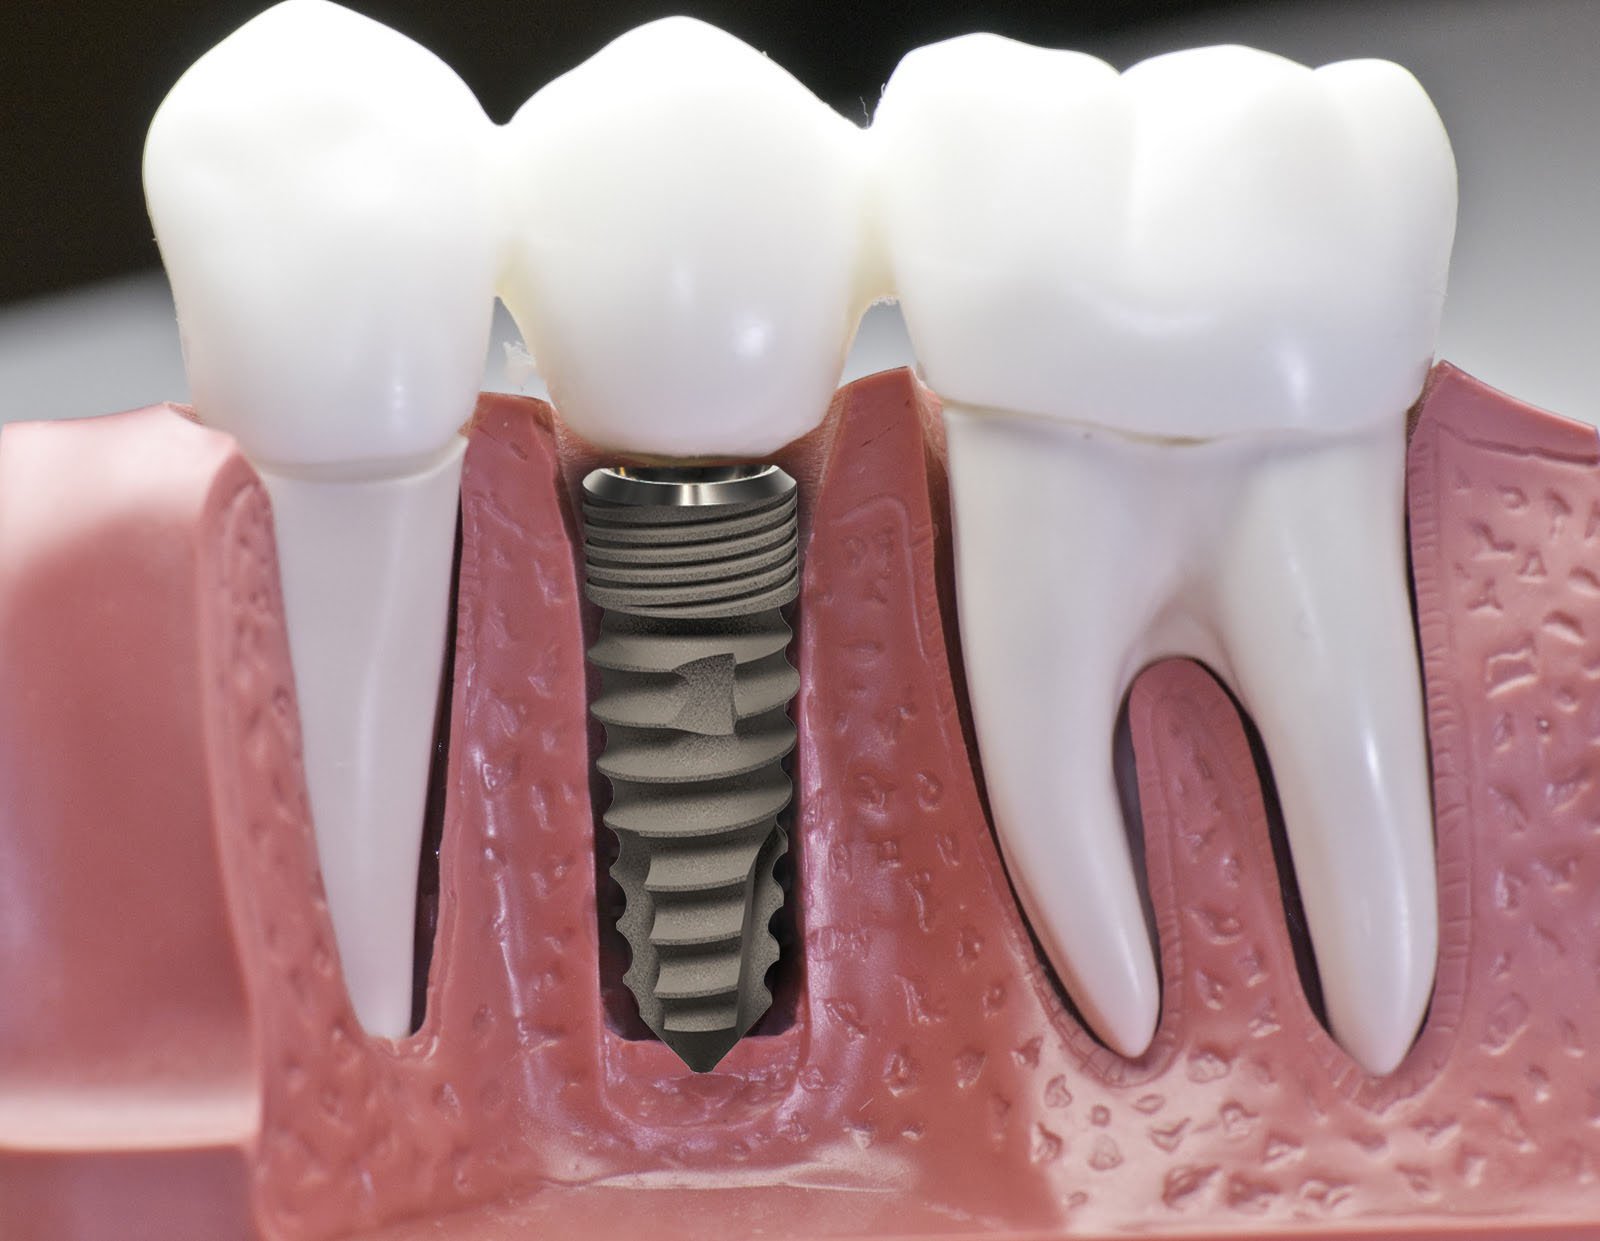 Răng giả làm từ chất liệu gì? | Vinmec